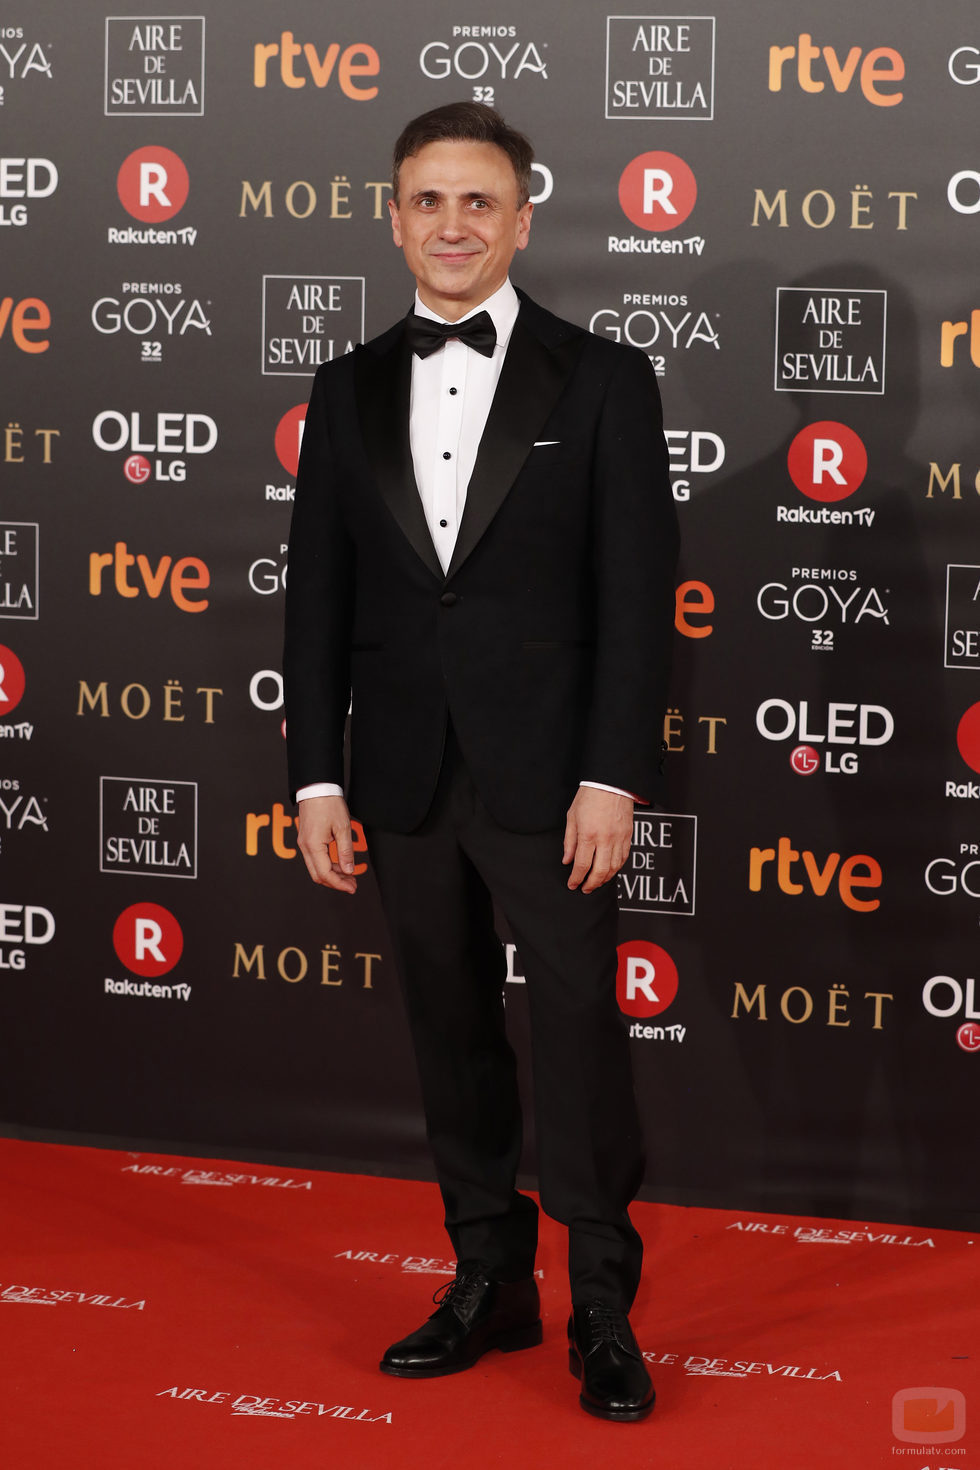 José Mota posa en la alfombra roja de los Premios Goya 2018